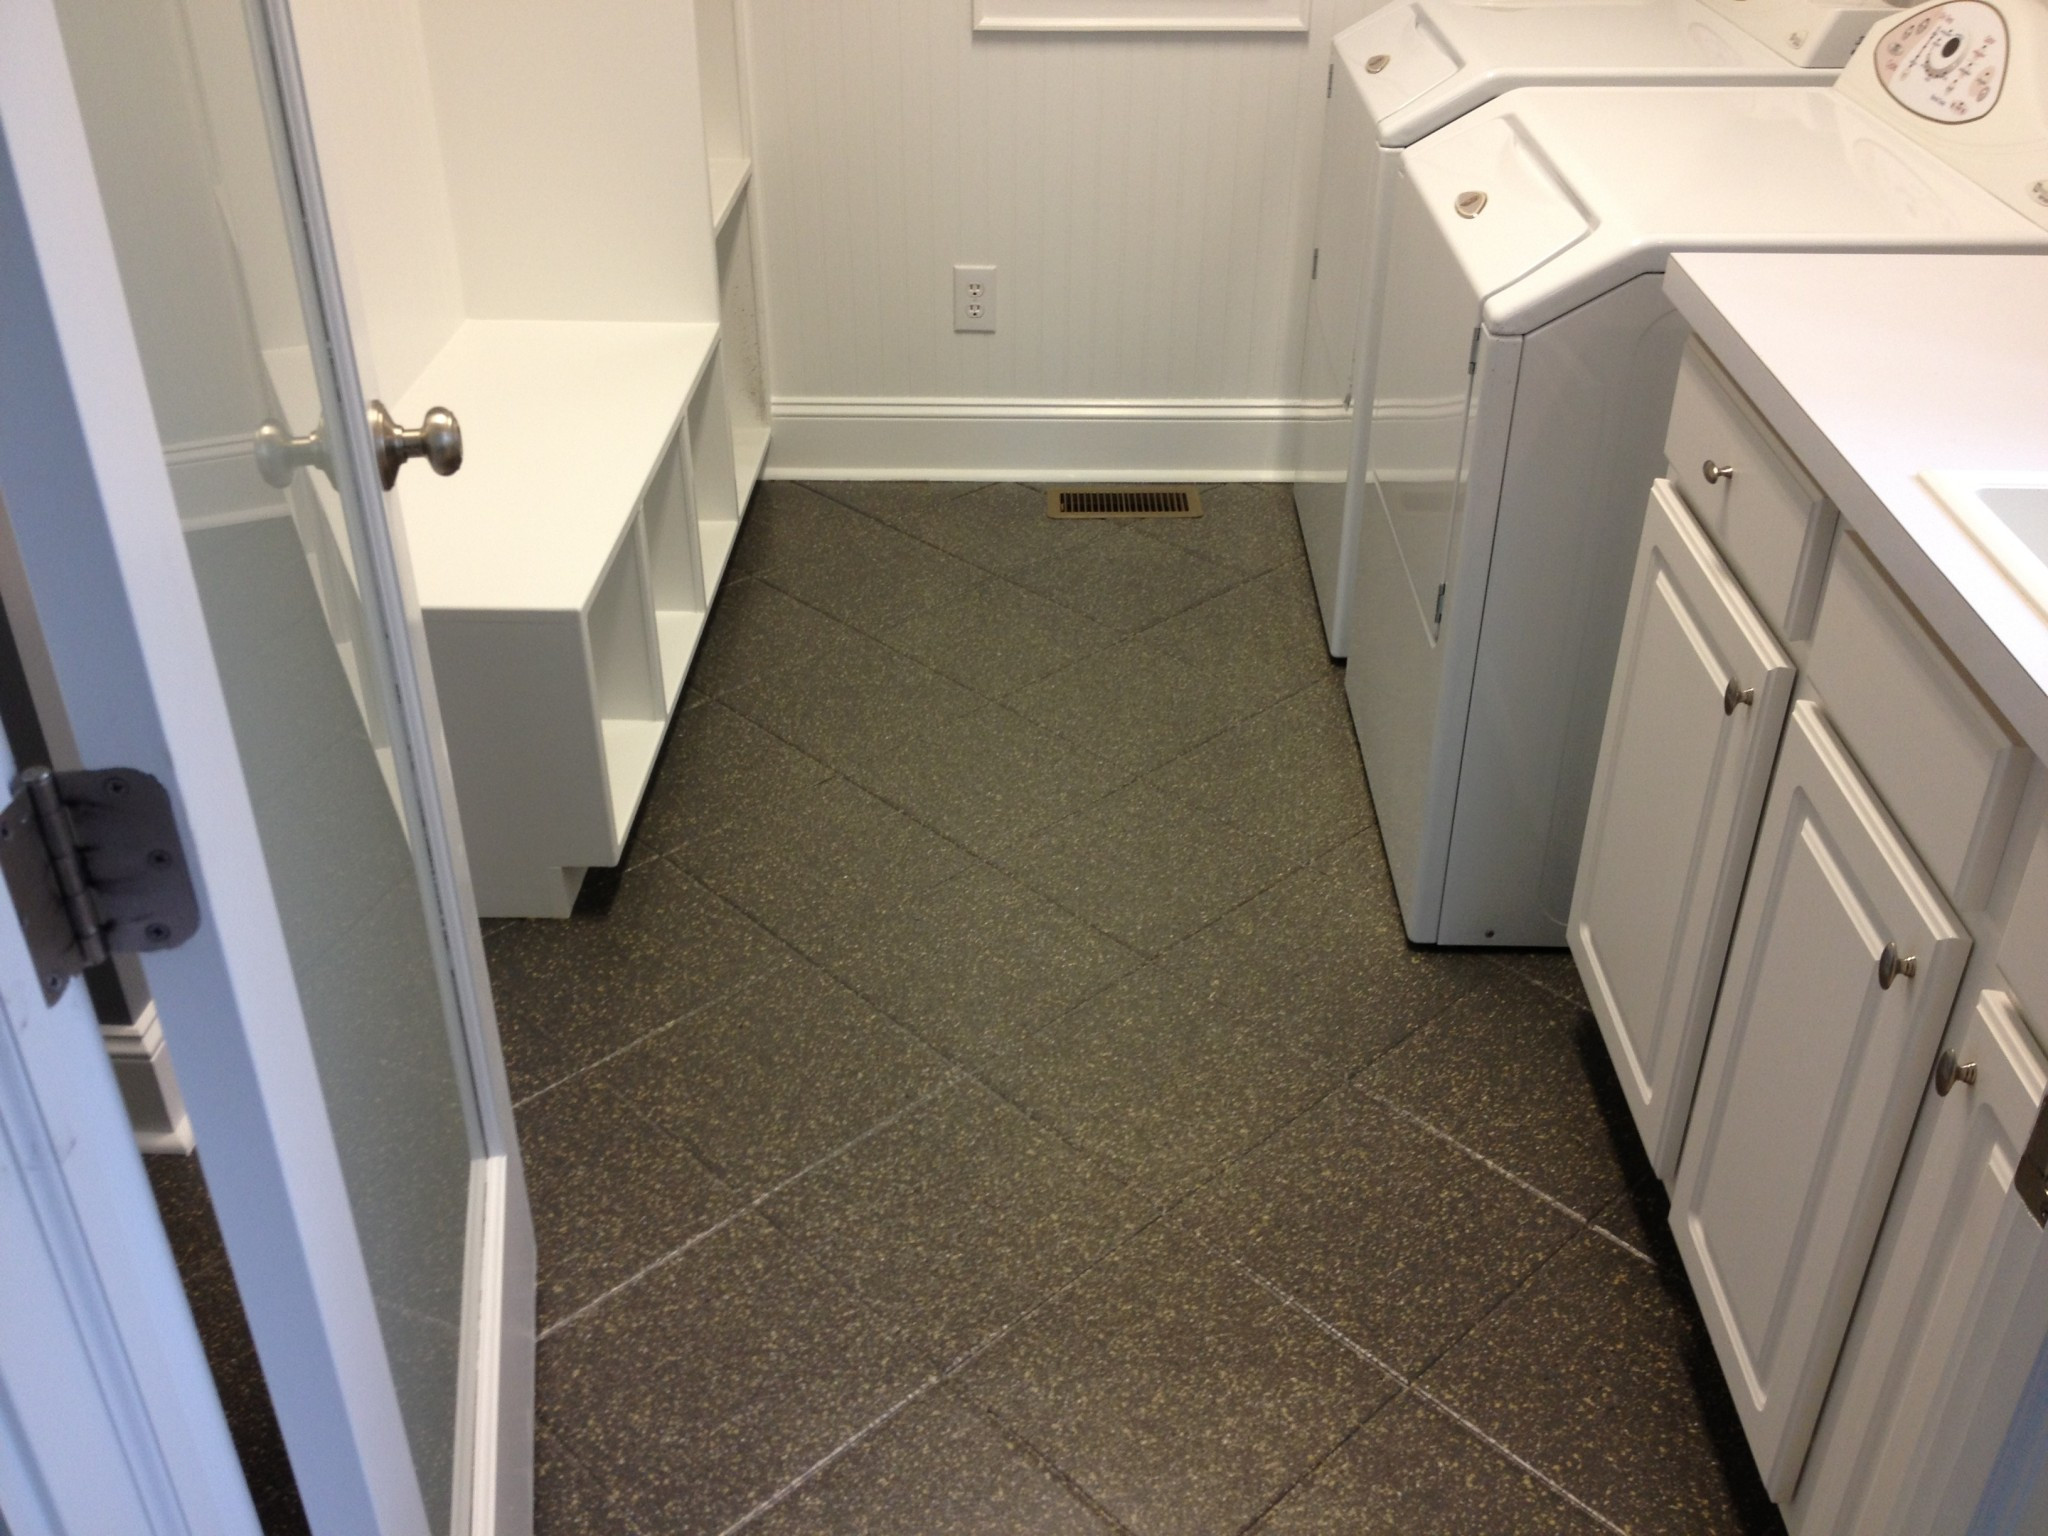 Refinishing Bathroom Tiles
 Wall and Floor Tile Reglazing and Refinishing